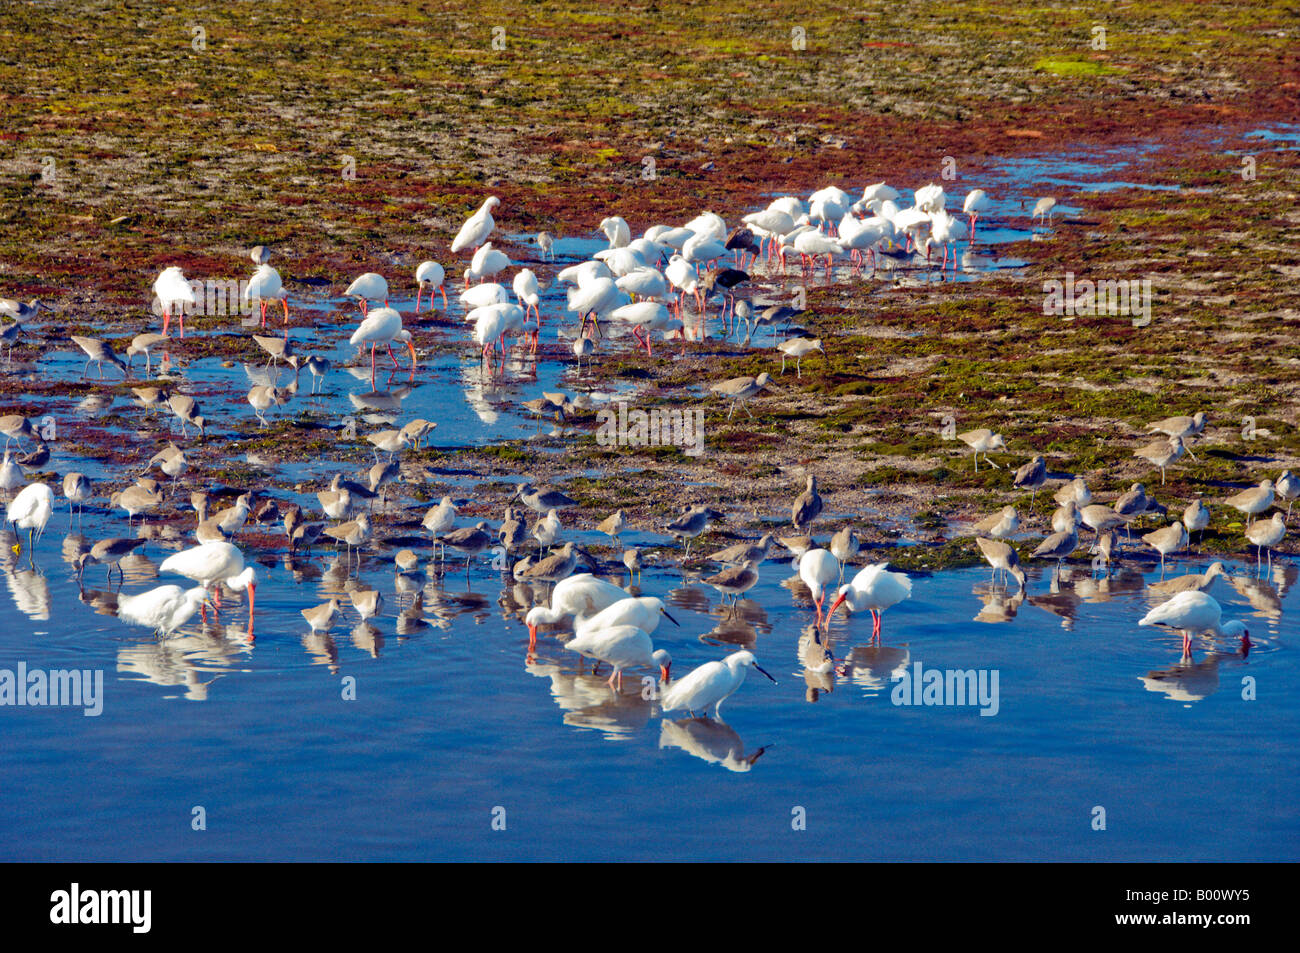 Pájaros tropicales como el Ibis Blanco se alimentan en los pantanos de Sanibel Island, Florida, EE.UU. Foto de stock